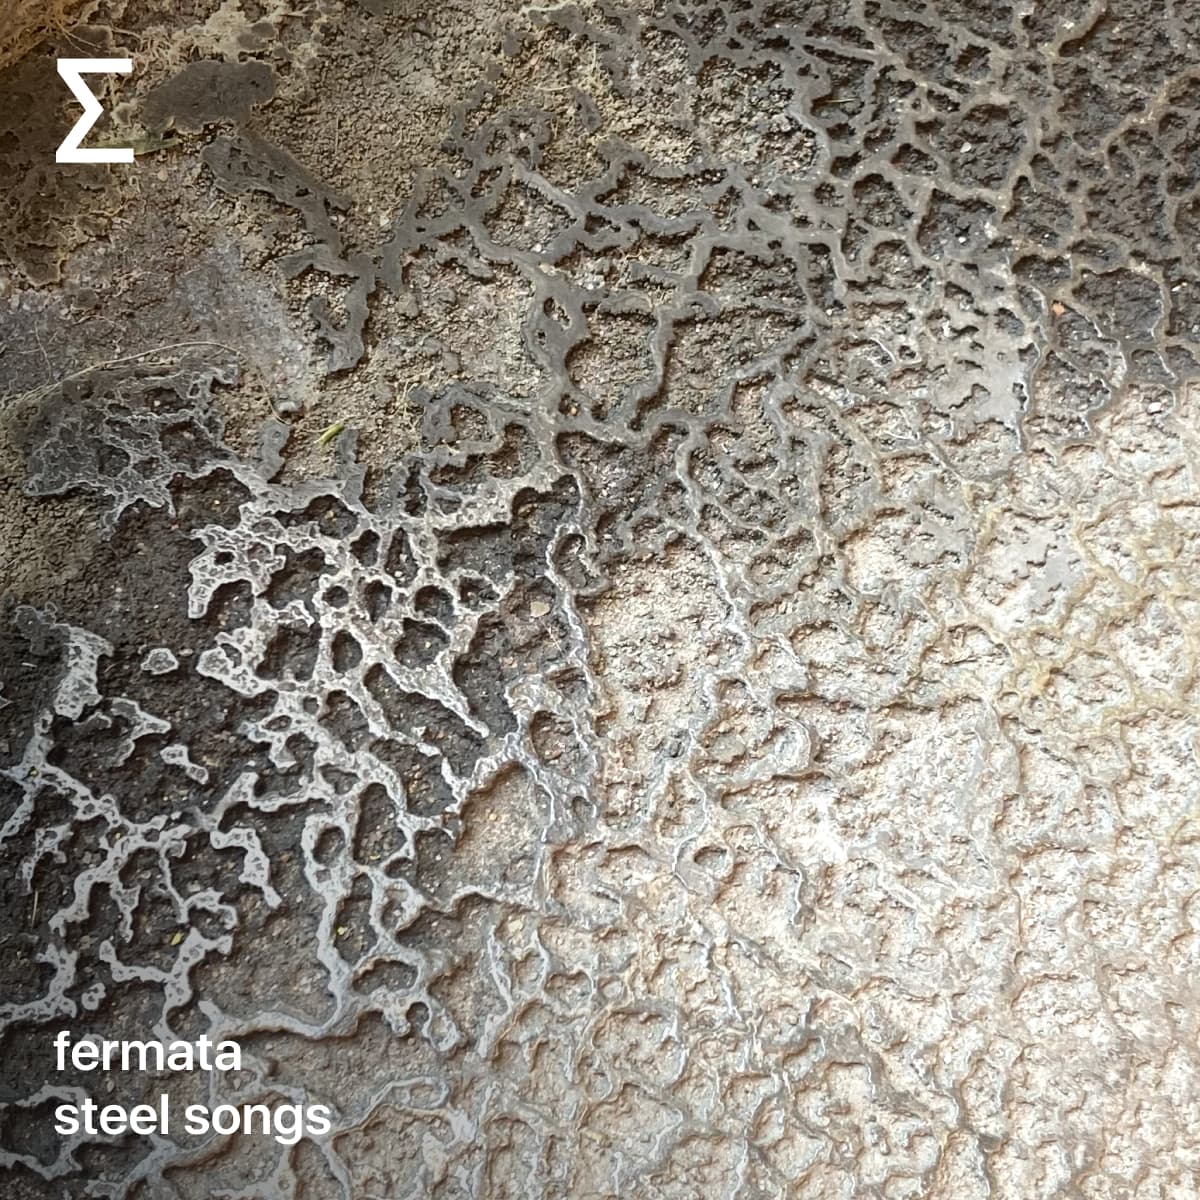 fermata – steel songs